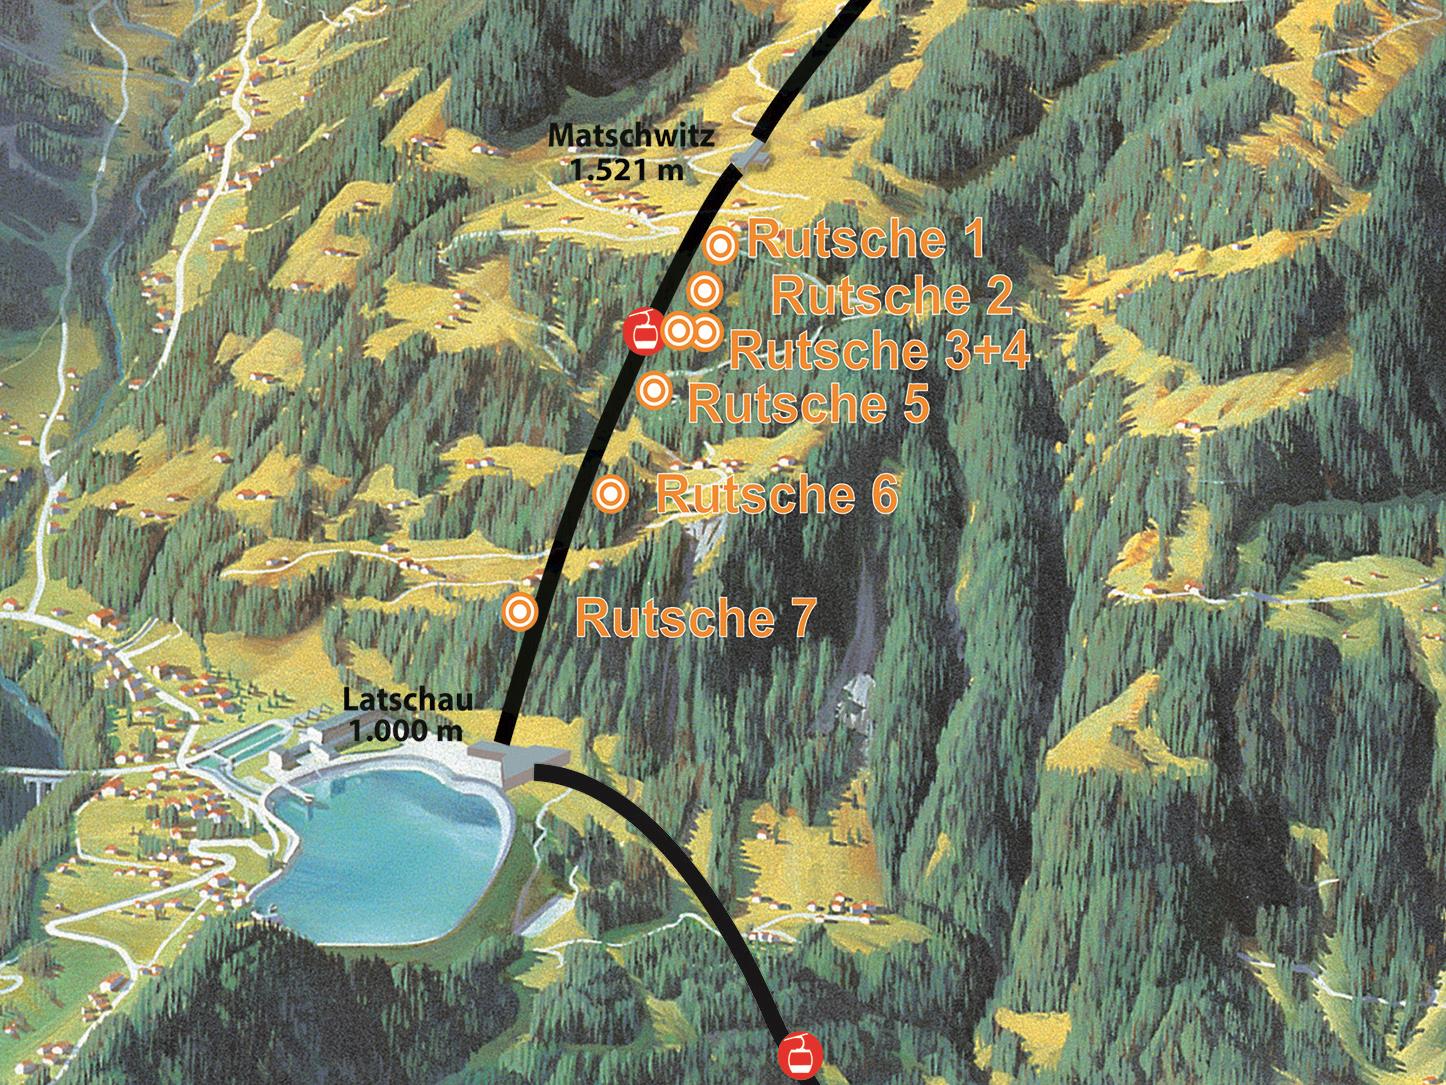 Der neue Waldrutschenpark: 7 Rutschen mit insgesamt 350 Rutschenmetern und 500 Höhenmetern.